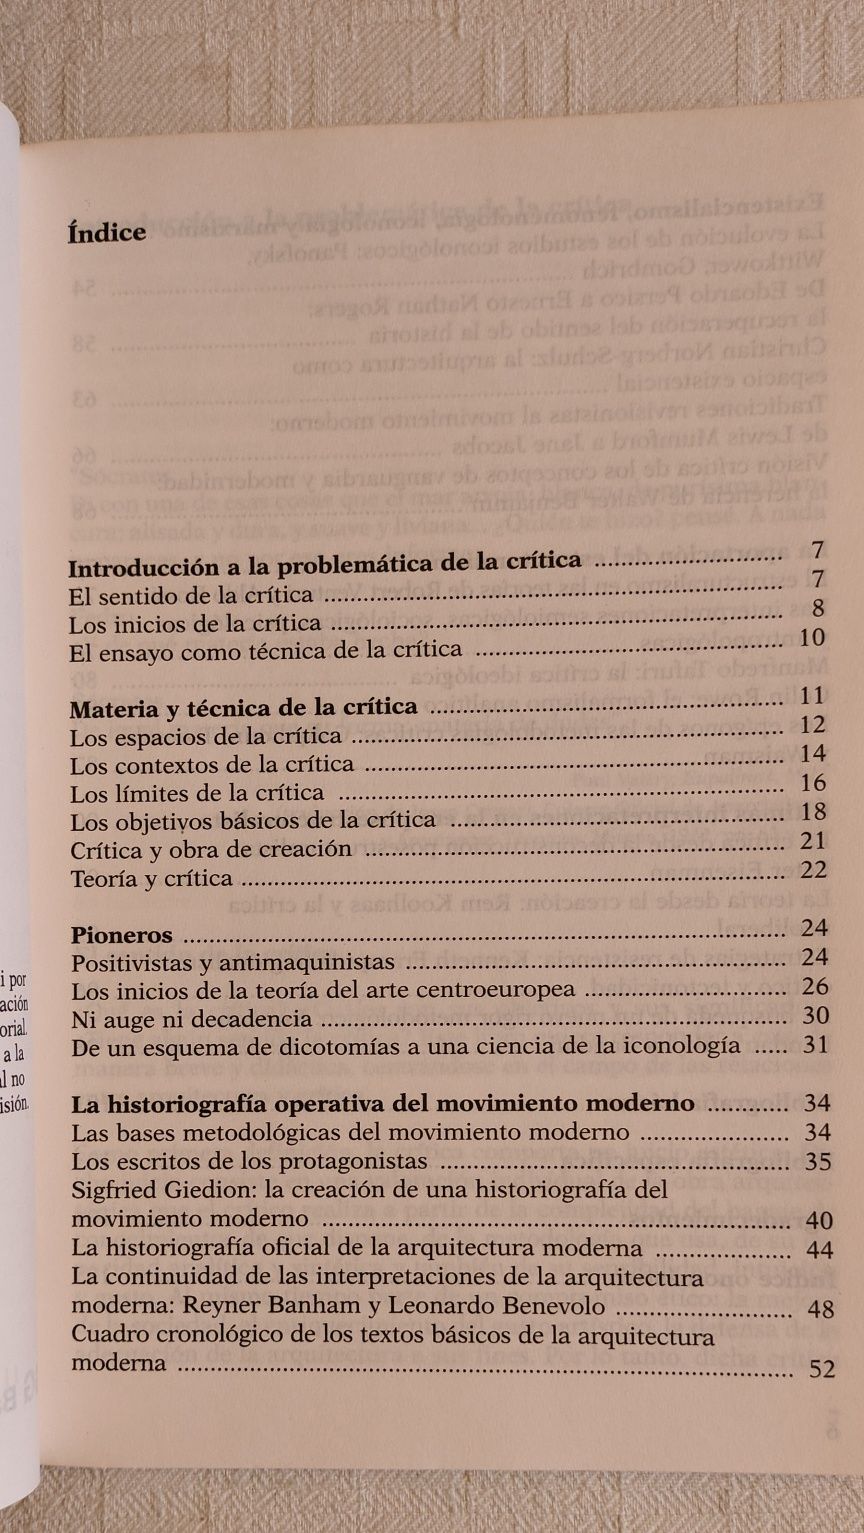 Arquitetura y crítica , Josep Maria Montaner